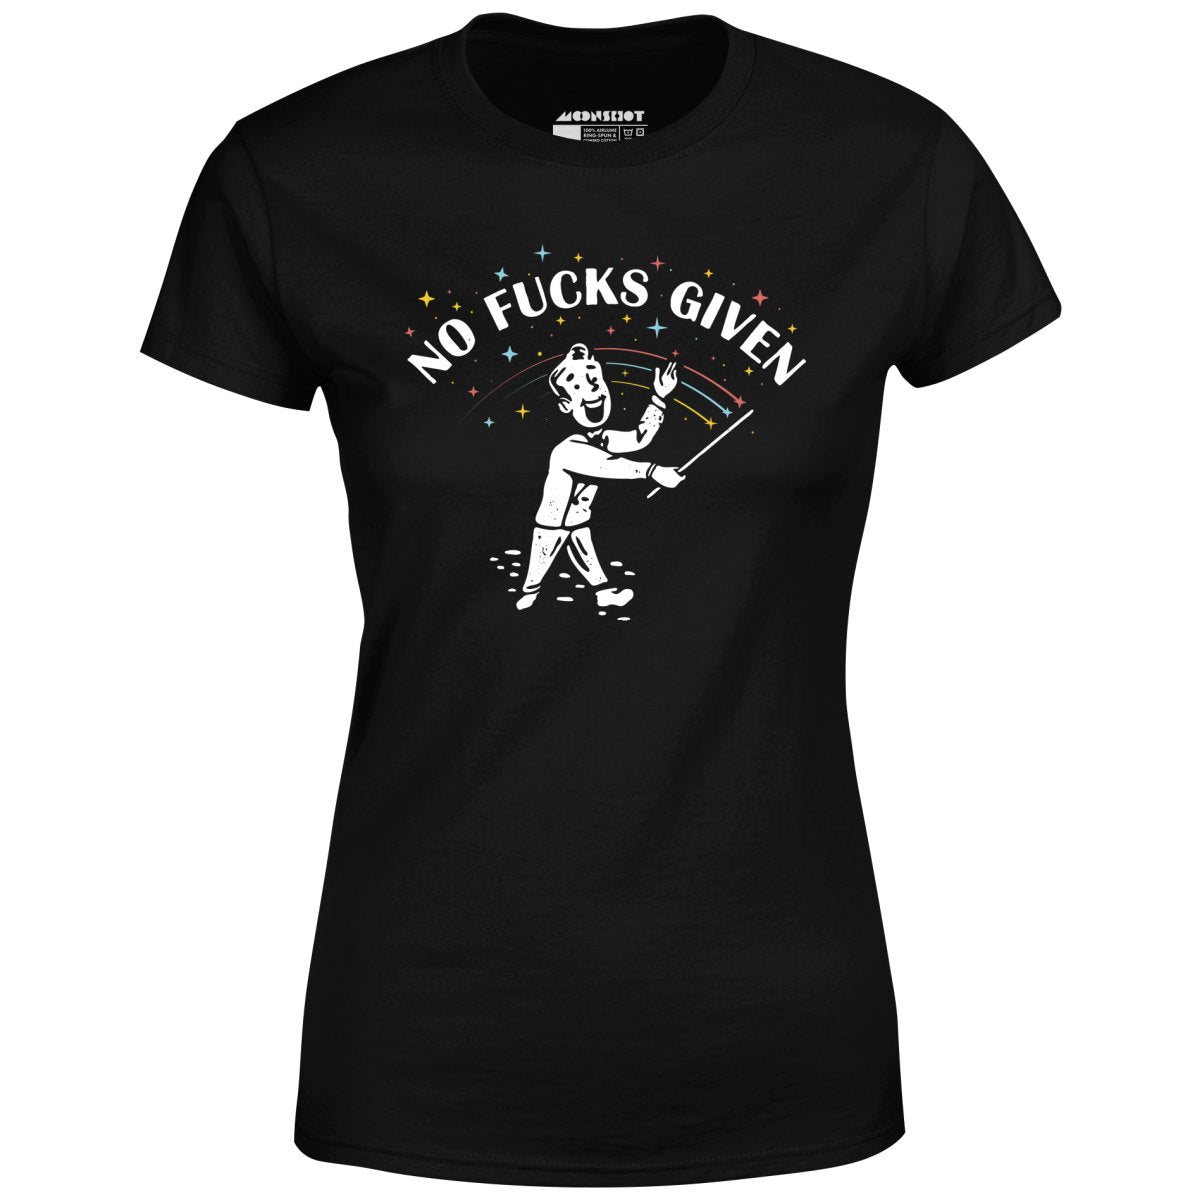 No Fucks Given - Women's T-Shirt